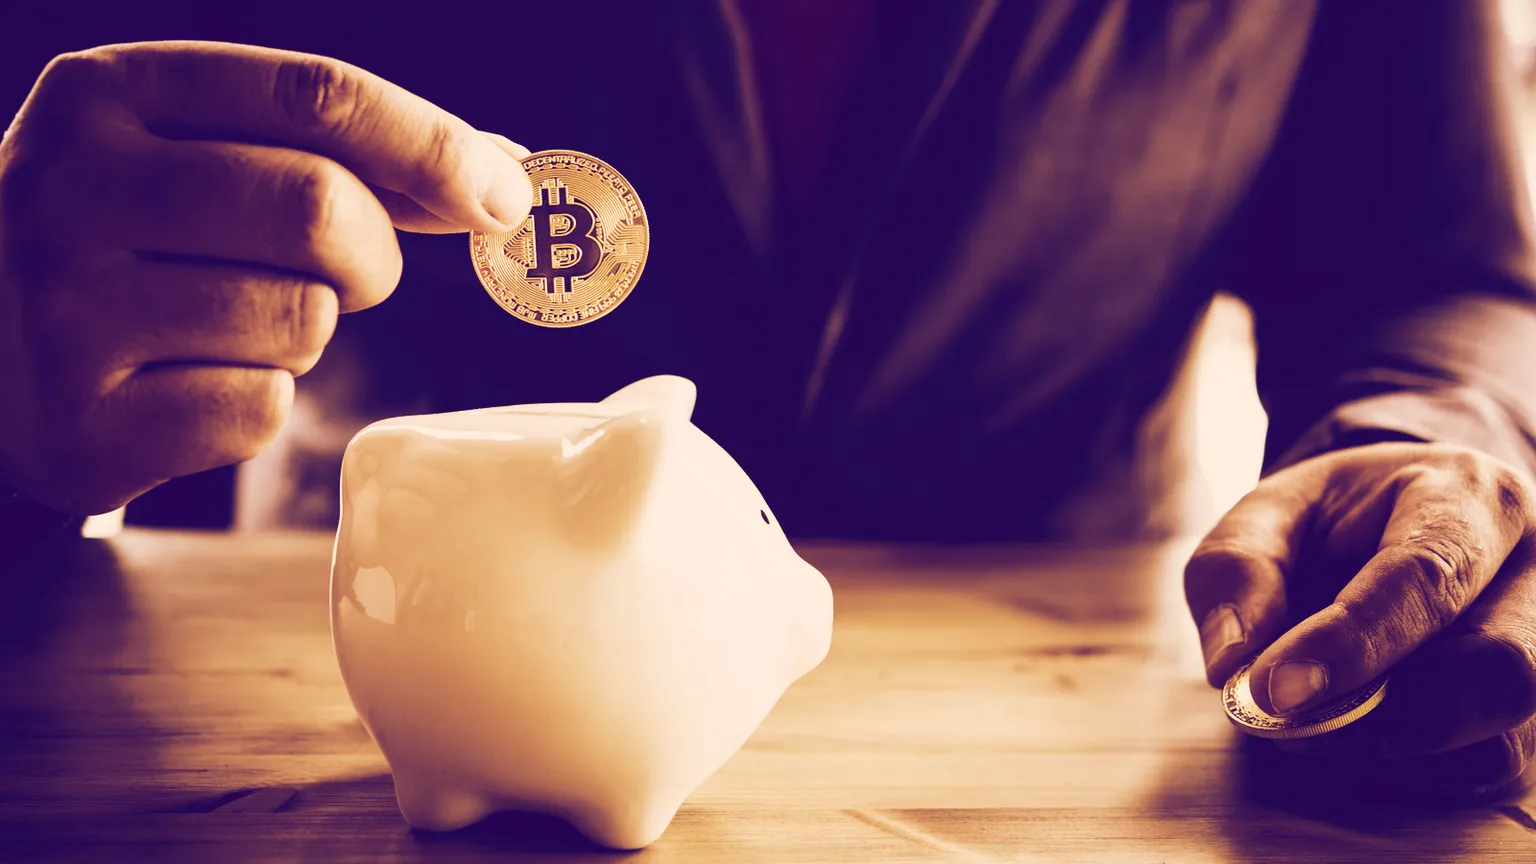 Las inversiones de Bitcoin están en alza. Imagen: Shutterstock